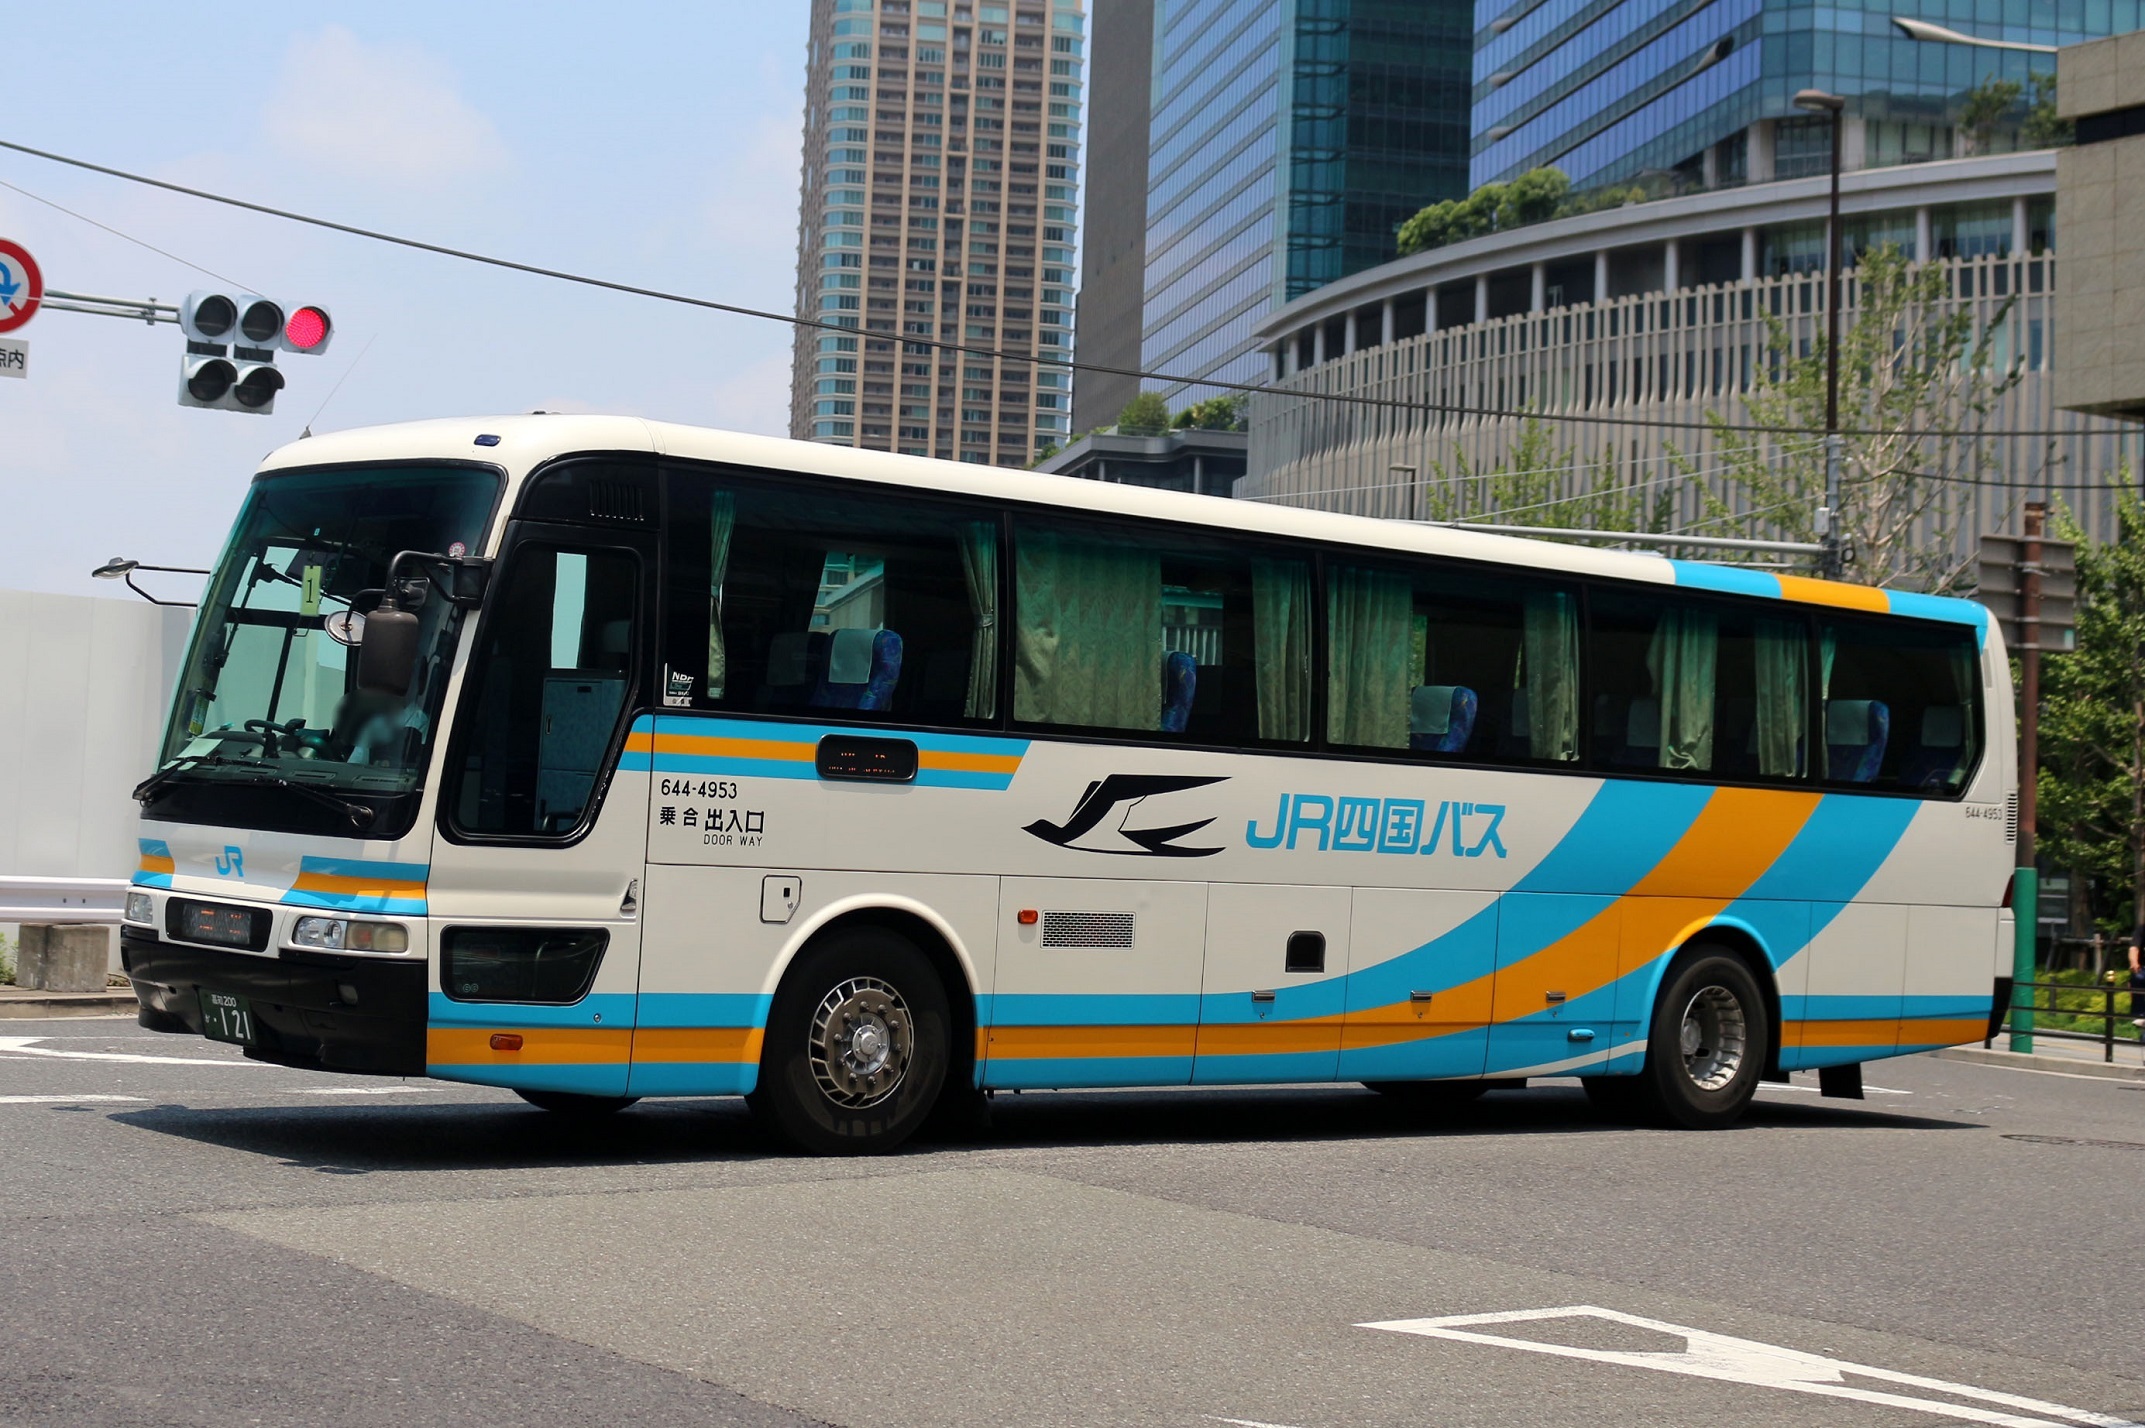 JR四国バス 644-4953